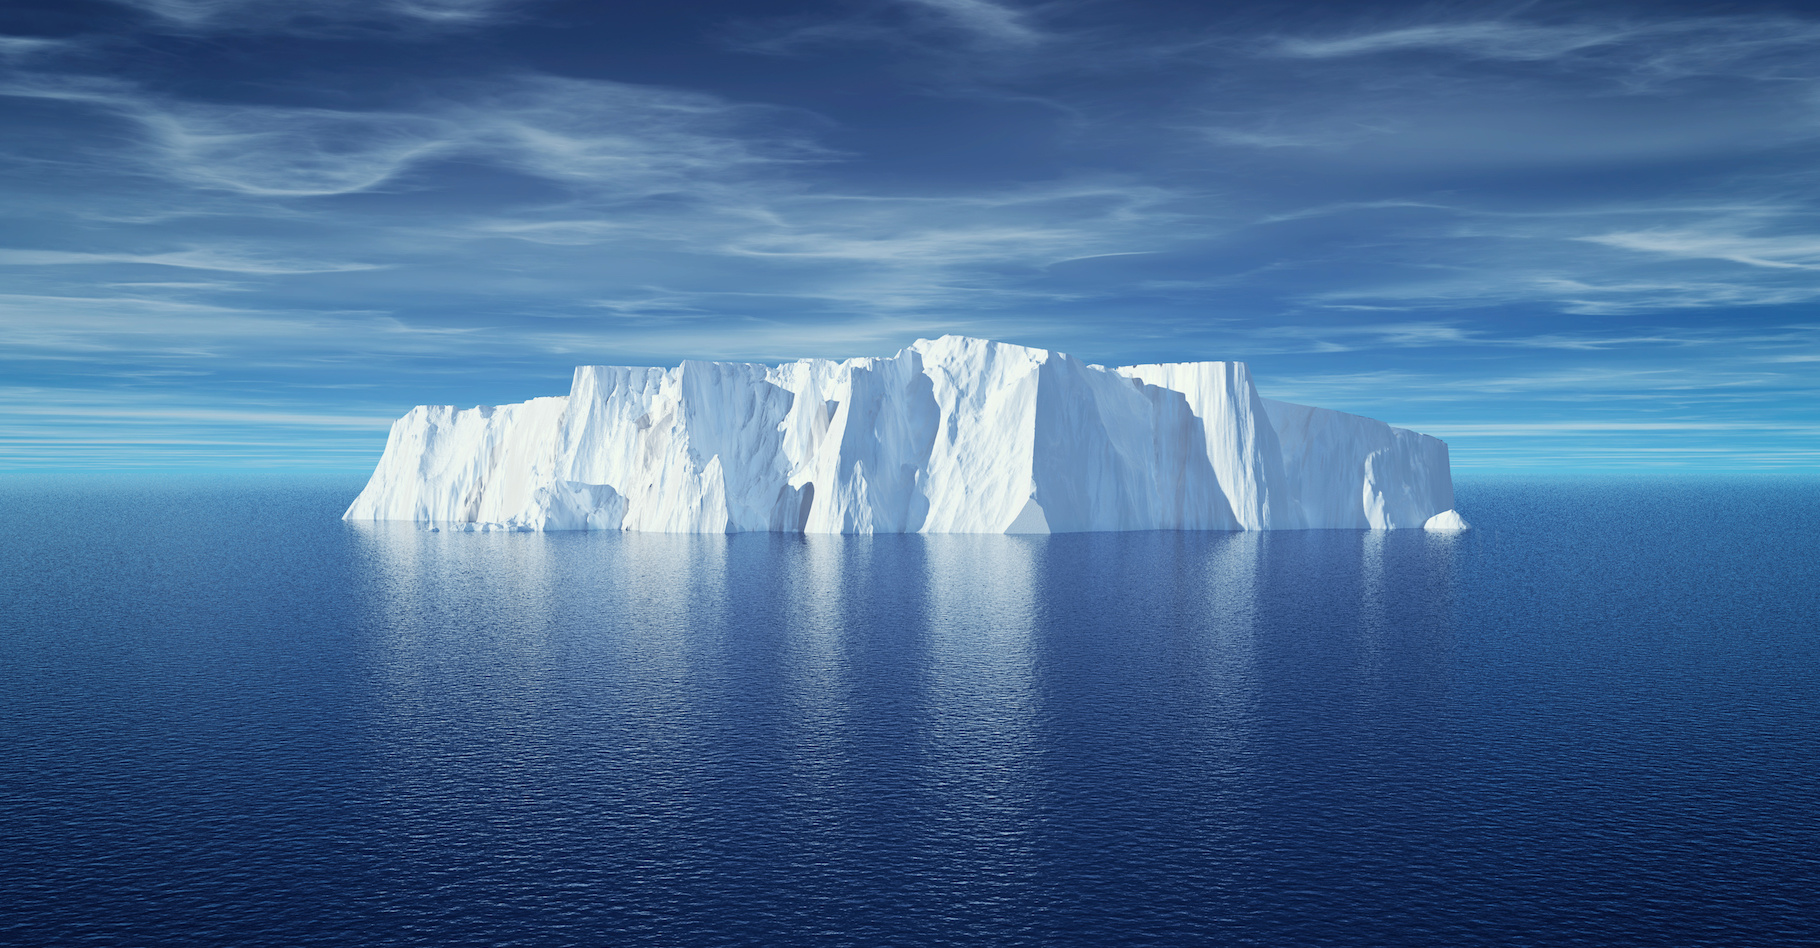 L’augmentation des températures des eaux sous la surface du nord de l’océan Atlantique puis la libération massive d’iceberg semblent mener à un effondrement de la circulation méridienne de retournement de l’Atlantique, l’Amoc. © Orlando Florin Rosu, Adobe Stock